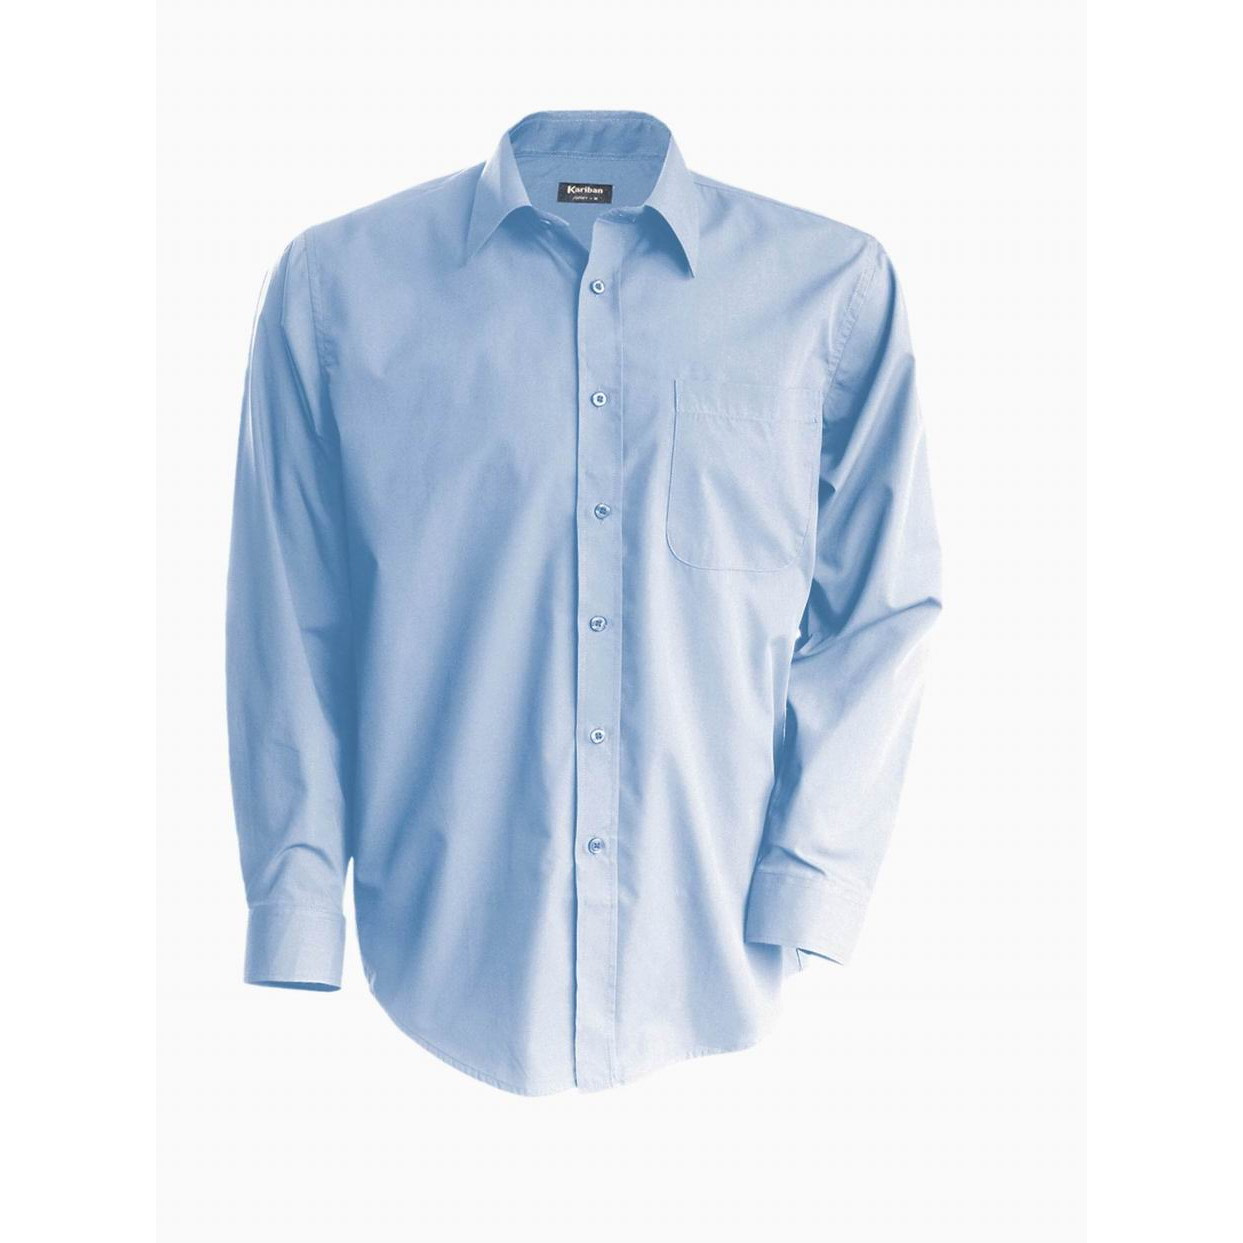 Pánská košile Kariban dlouhý rukáv v nežehlivé úpravě - modrá, L